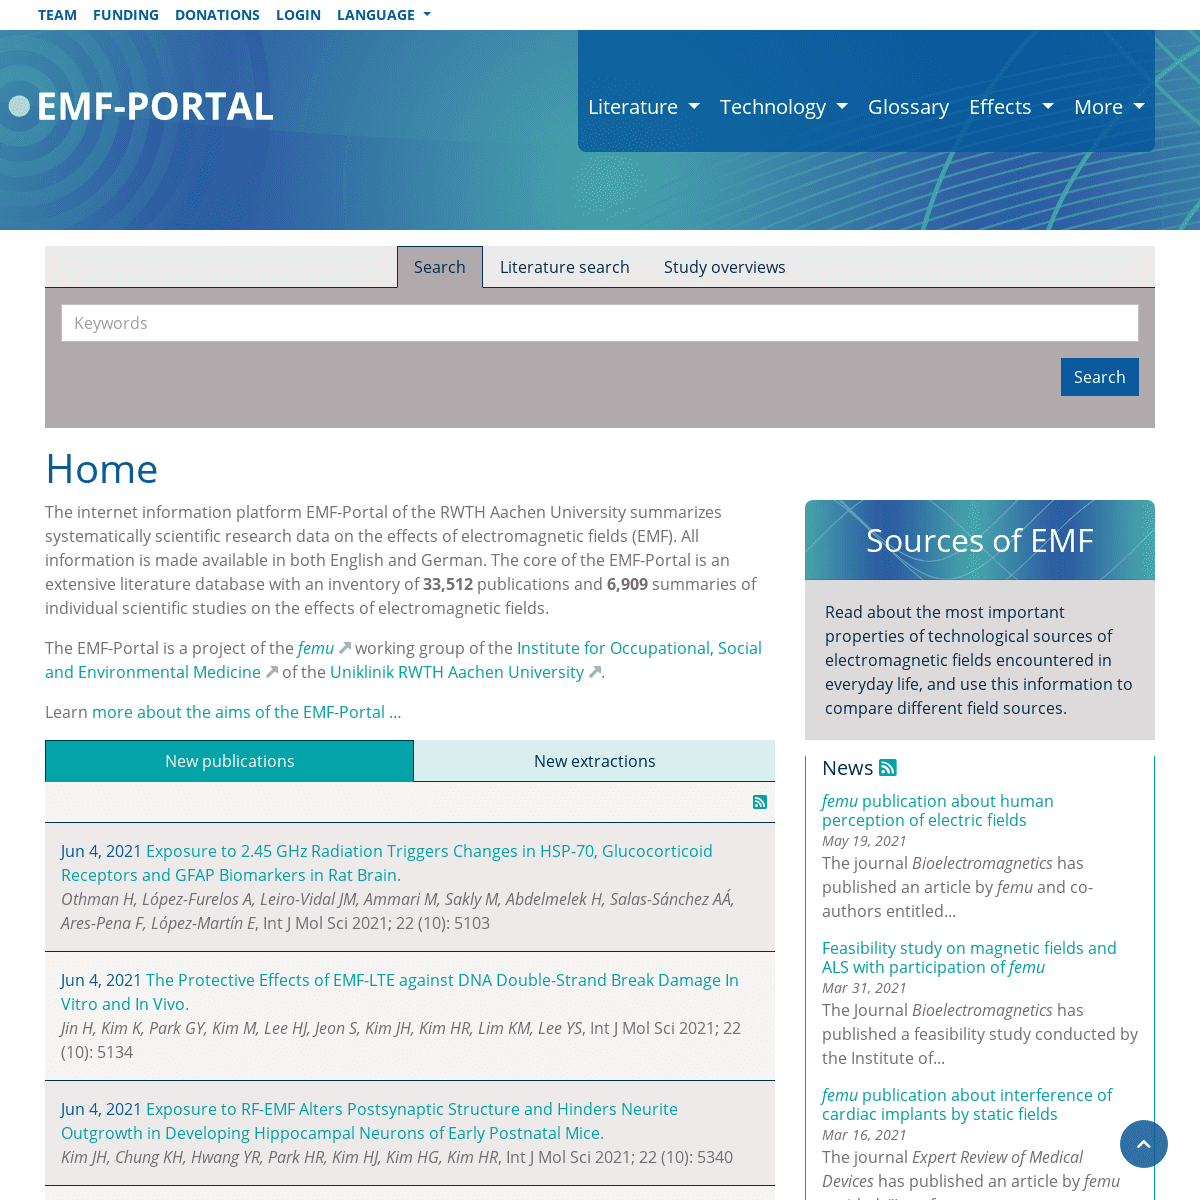 A complete backup of https://emf-portal.org